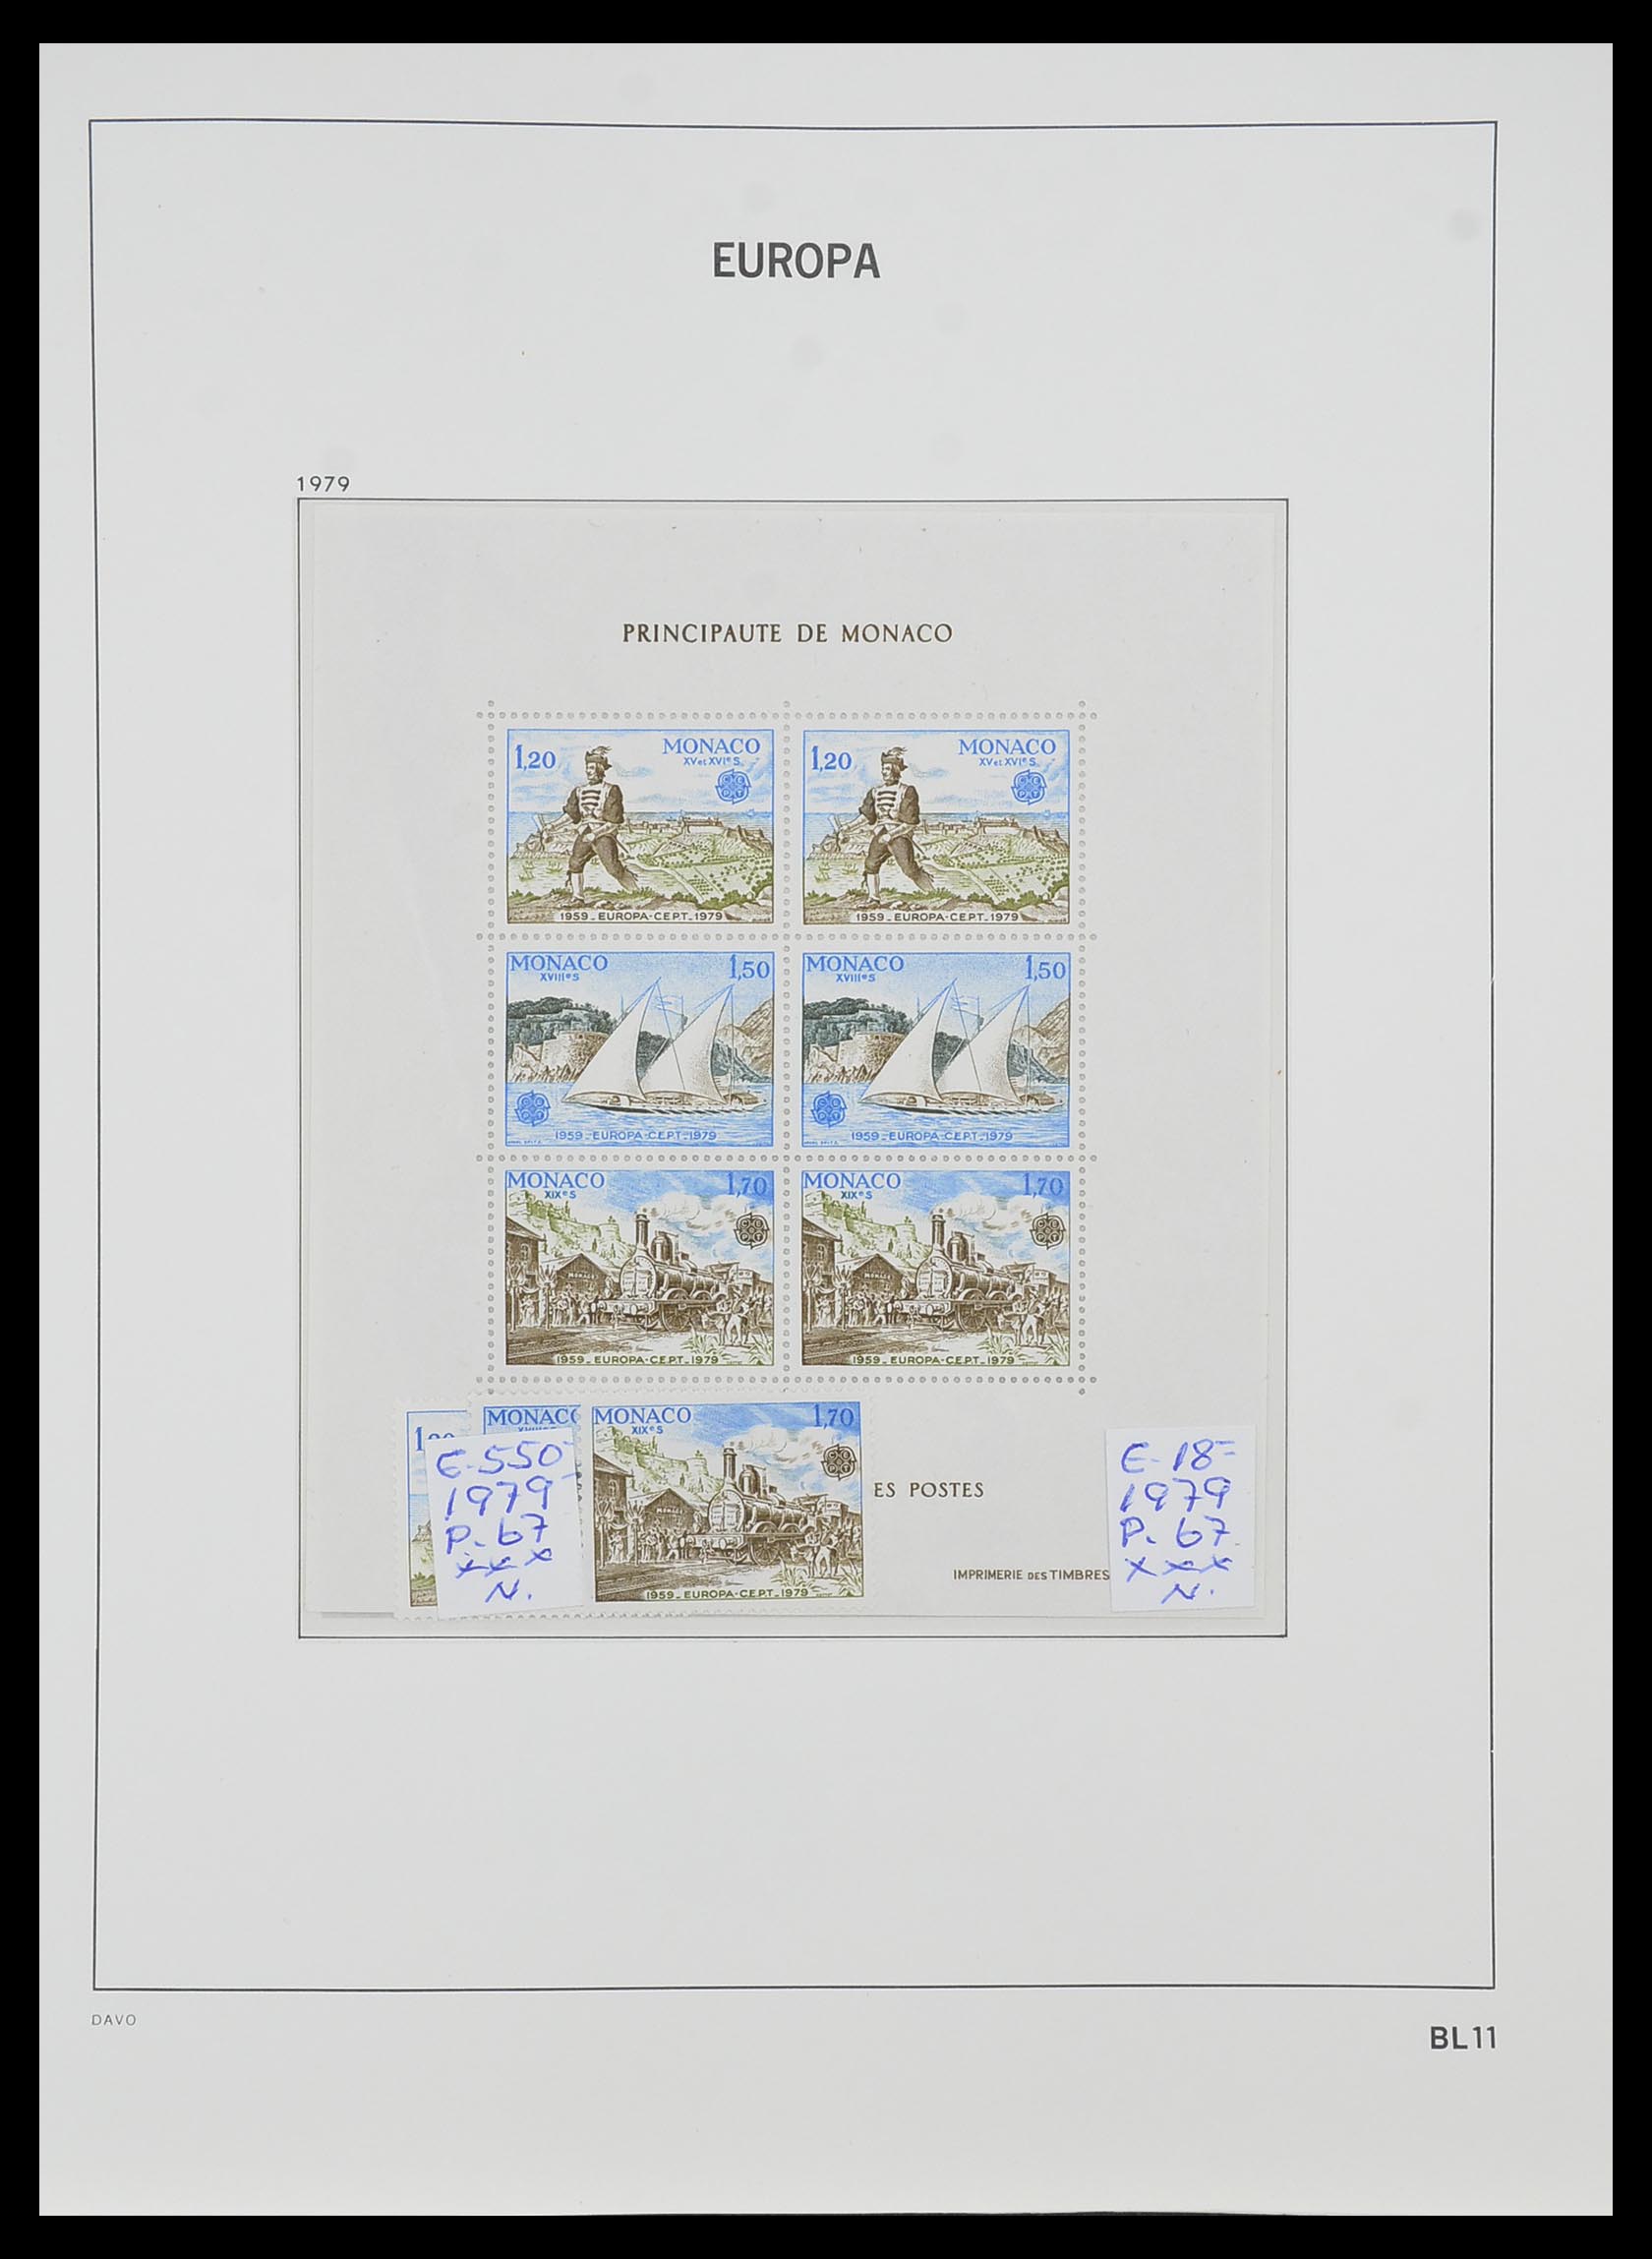 33985 011 - Stamp collection 33985 Europa CEPT souvenir sheets 1974-2014.